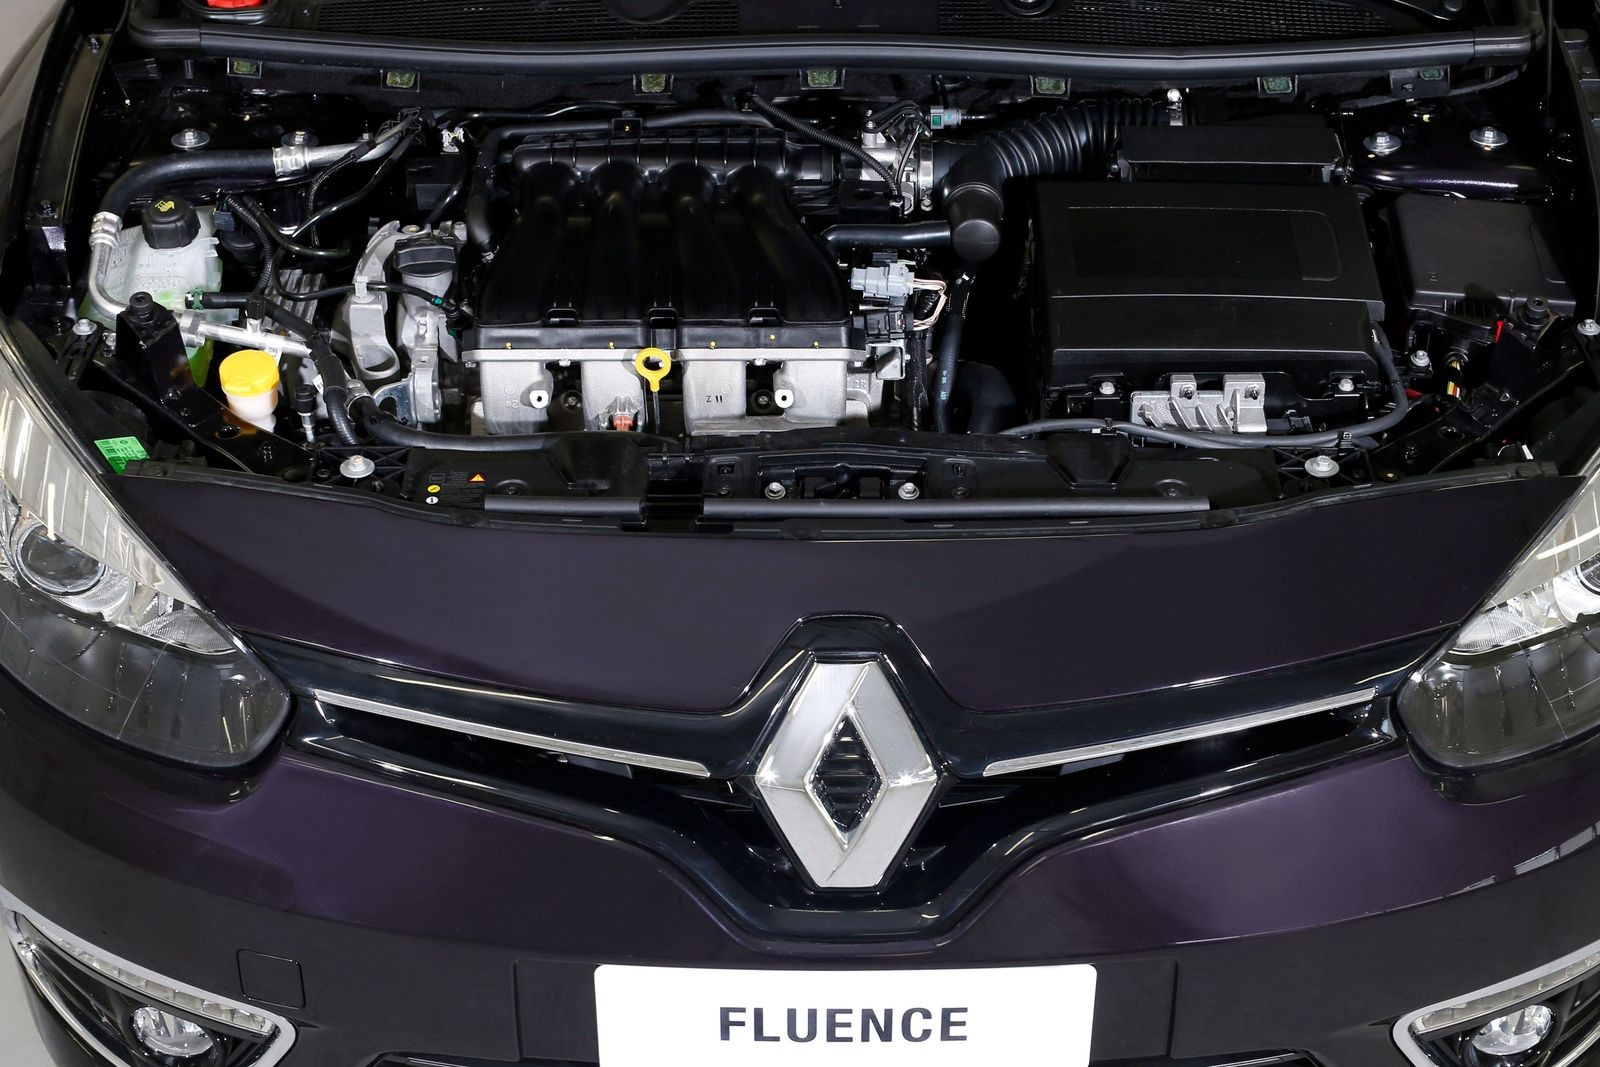 Почти D-класс, недорого: стоит ли покупать Renault Fluence за 500 тысяч рублей